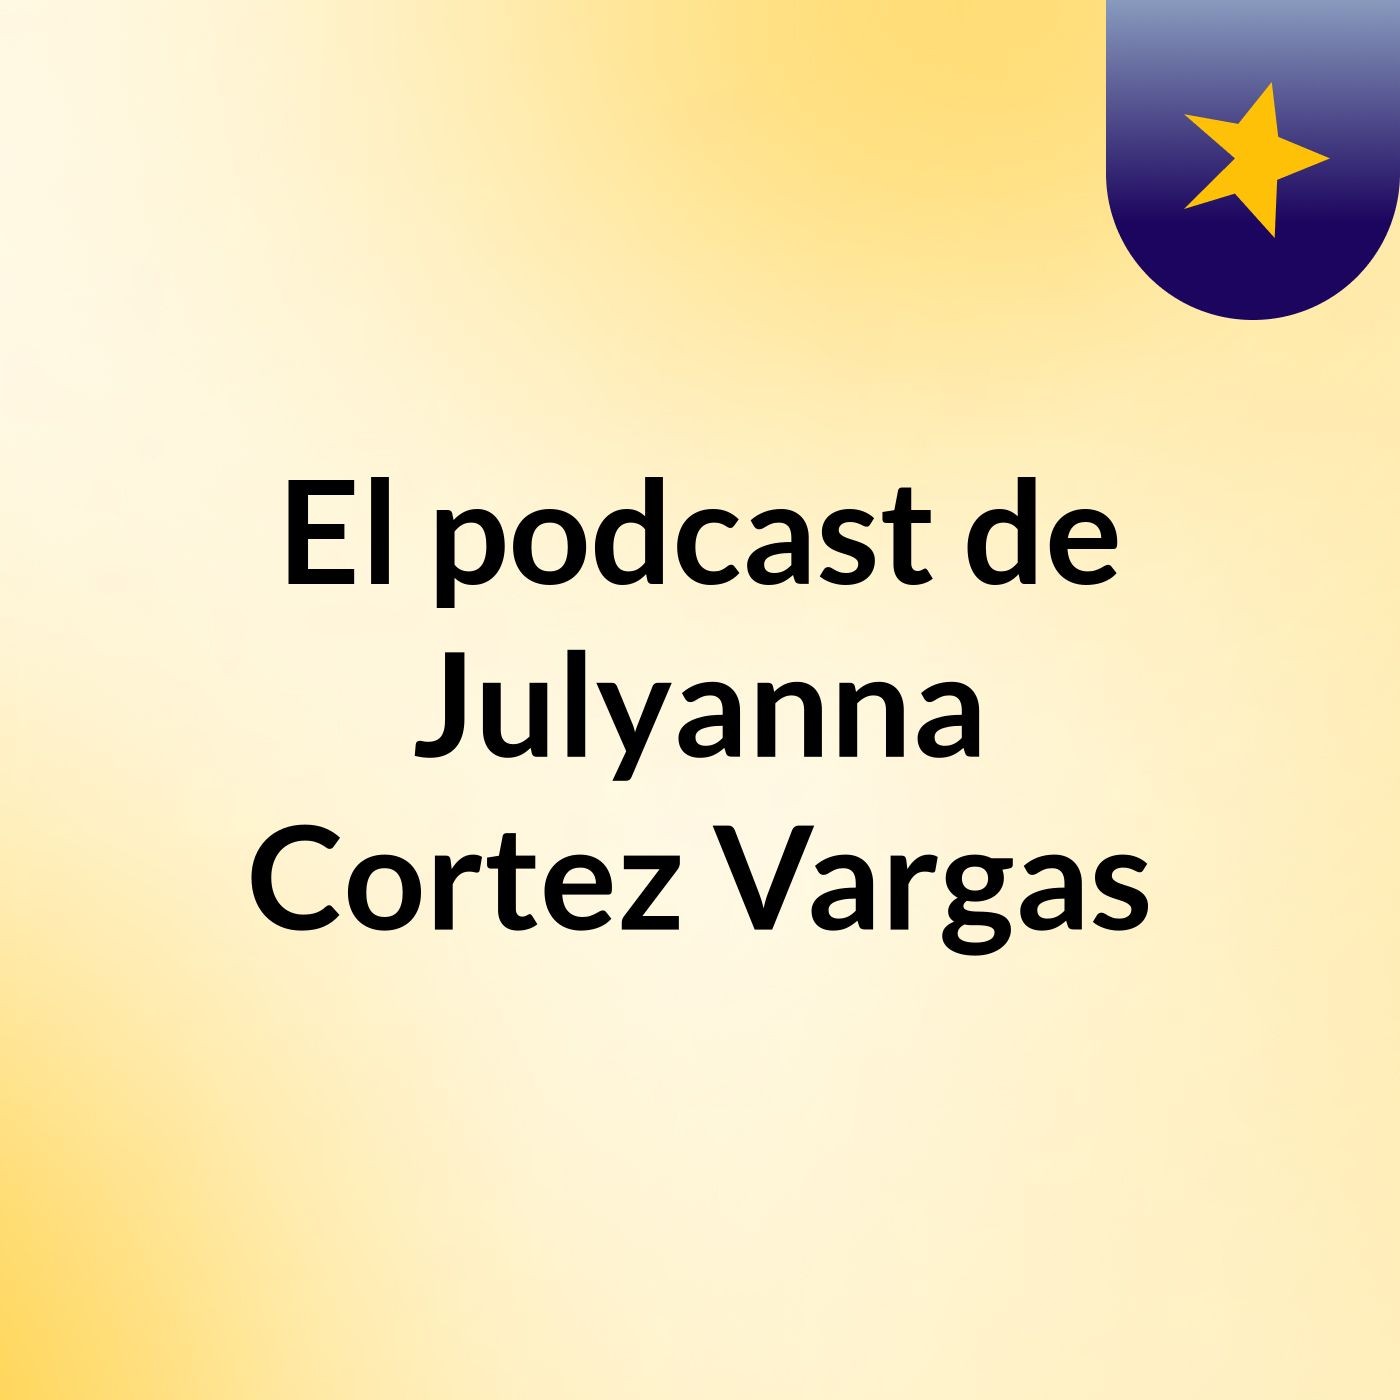 El podcast de Julyanna Cortez Vargas